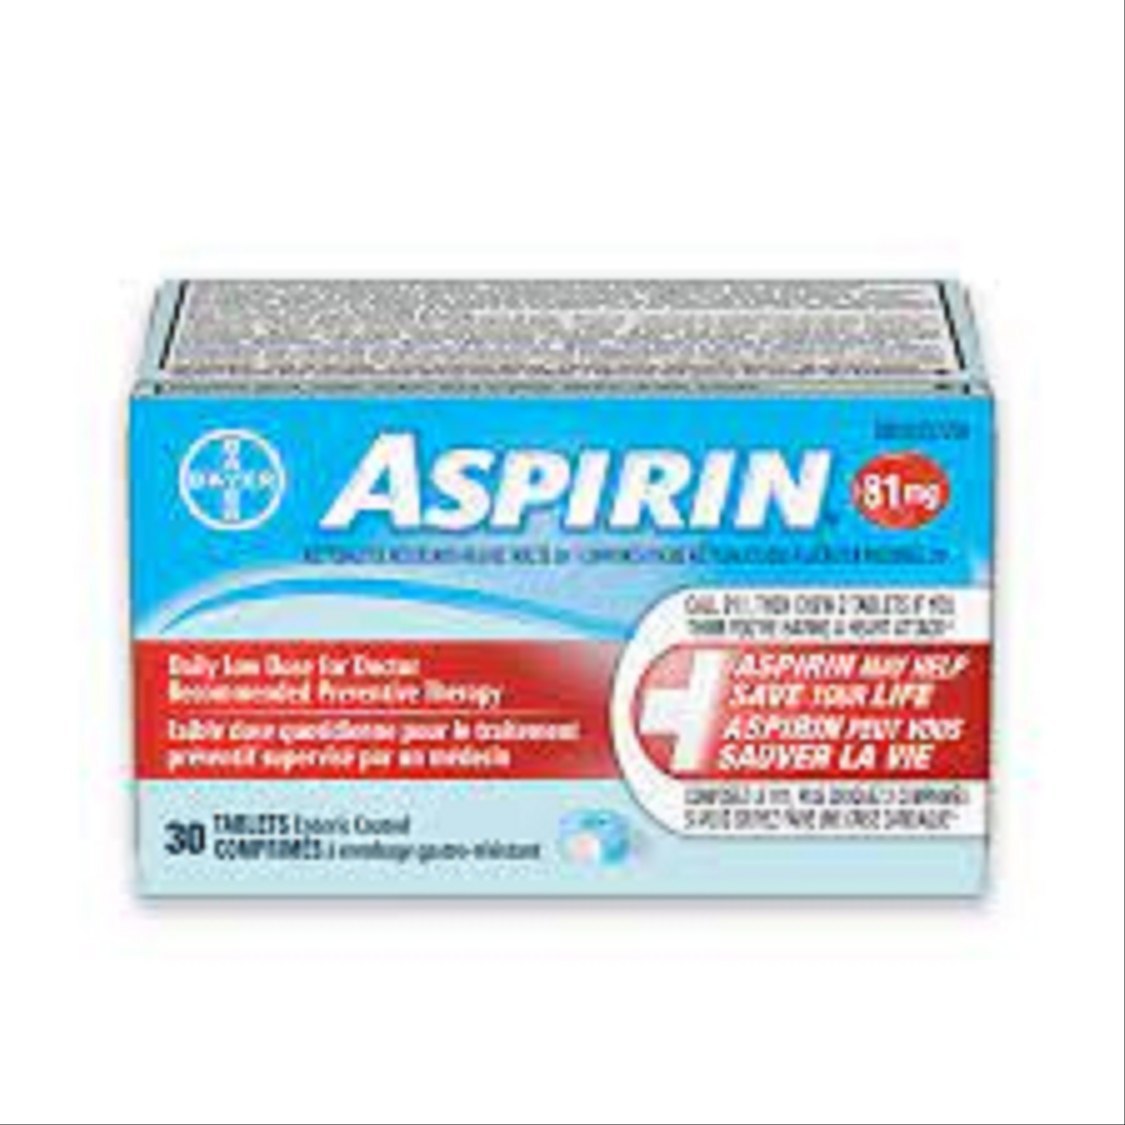 aspirin 81 mg